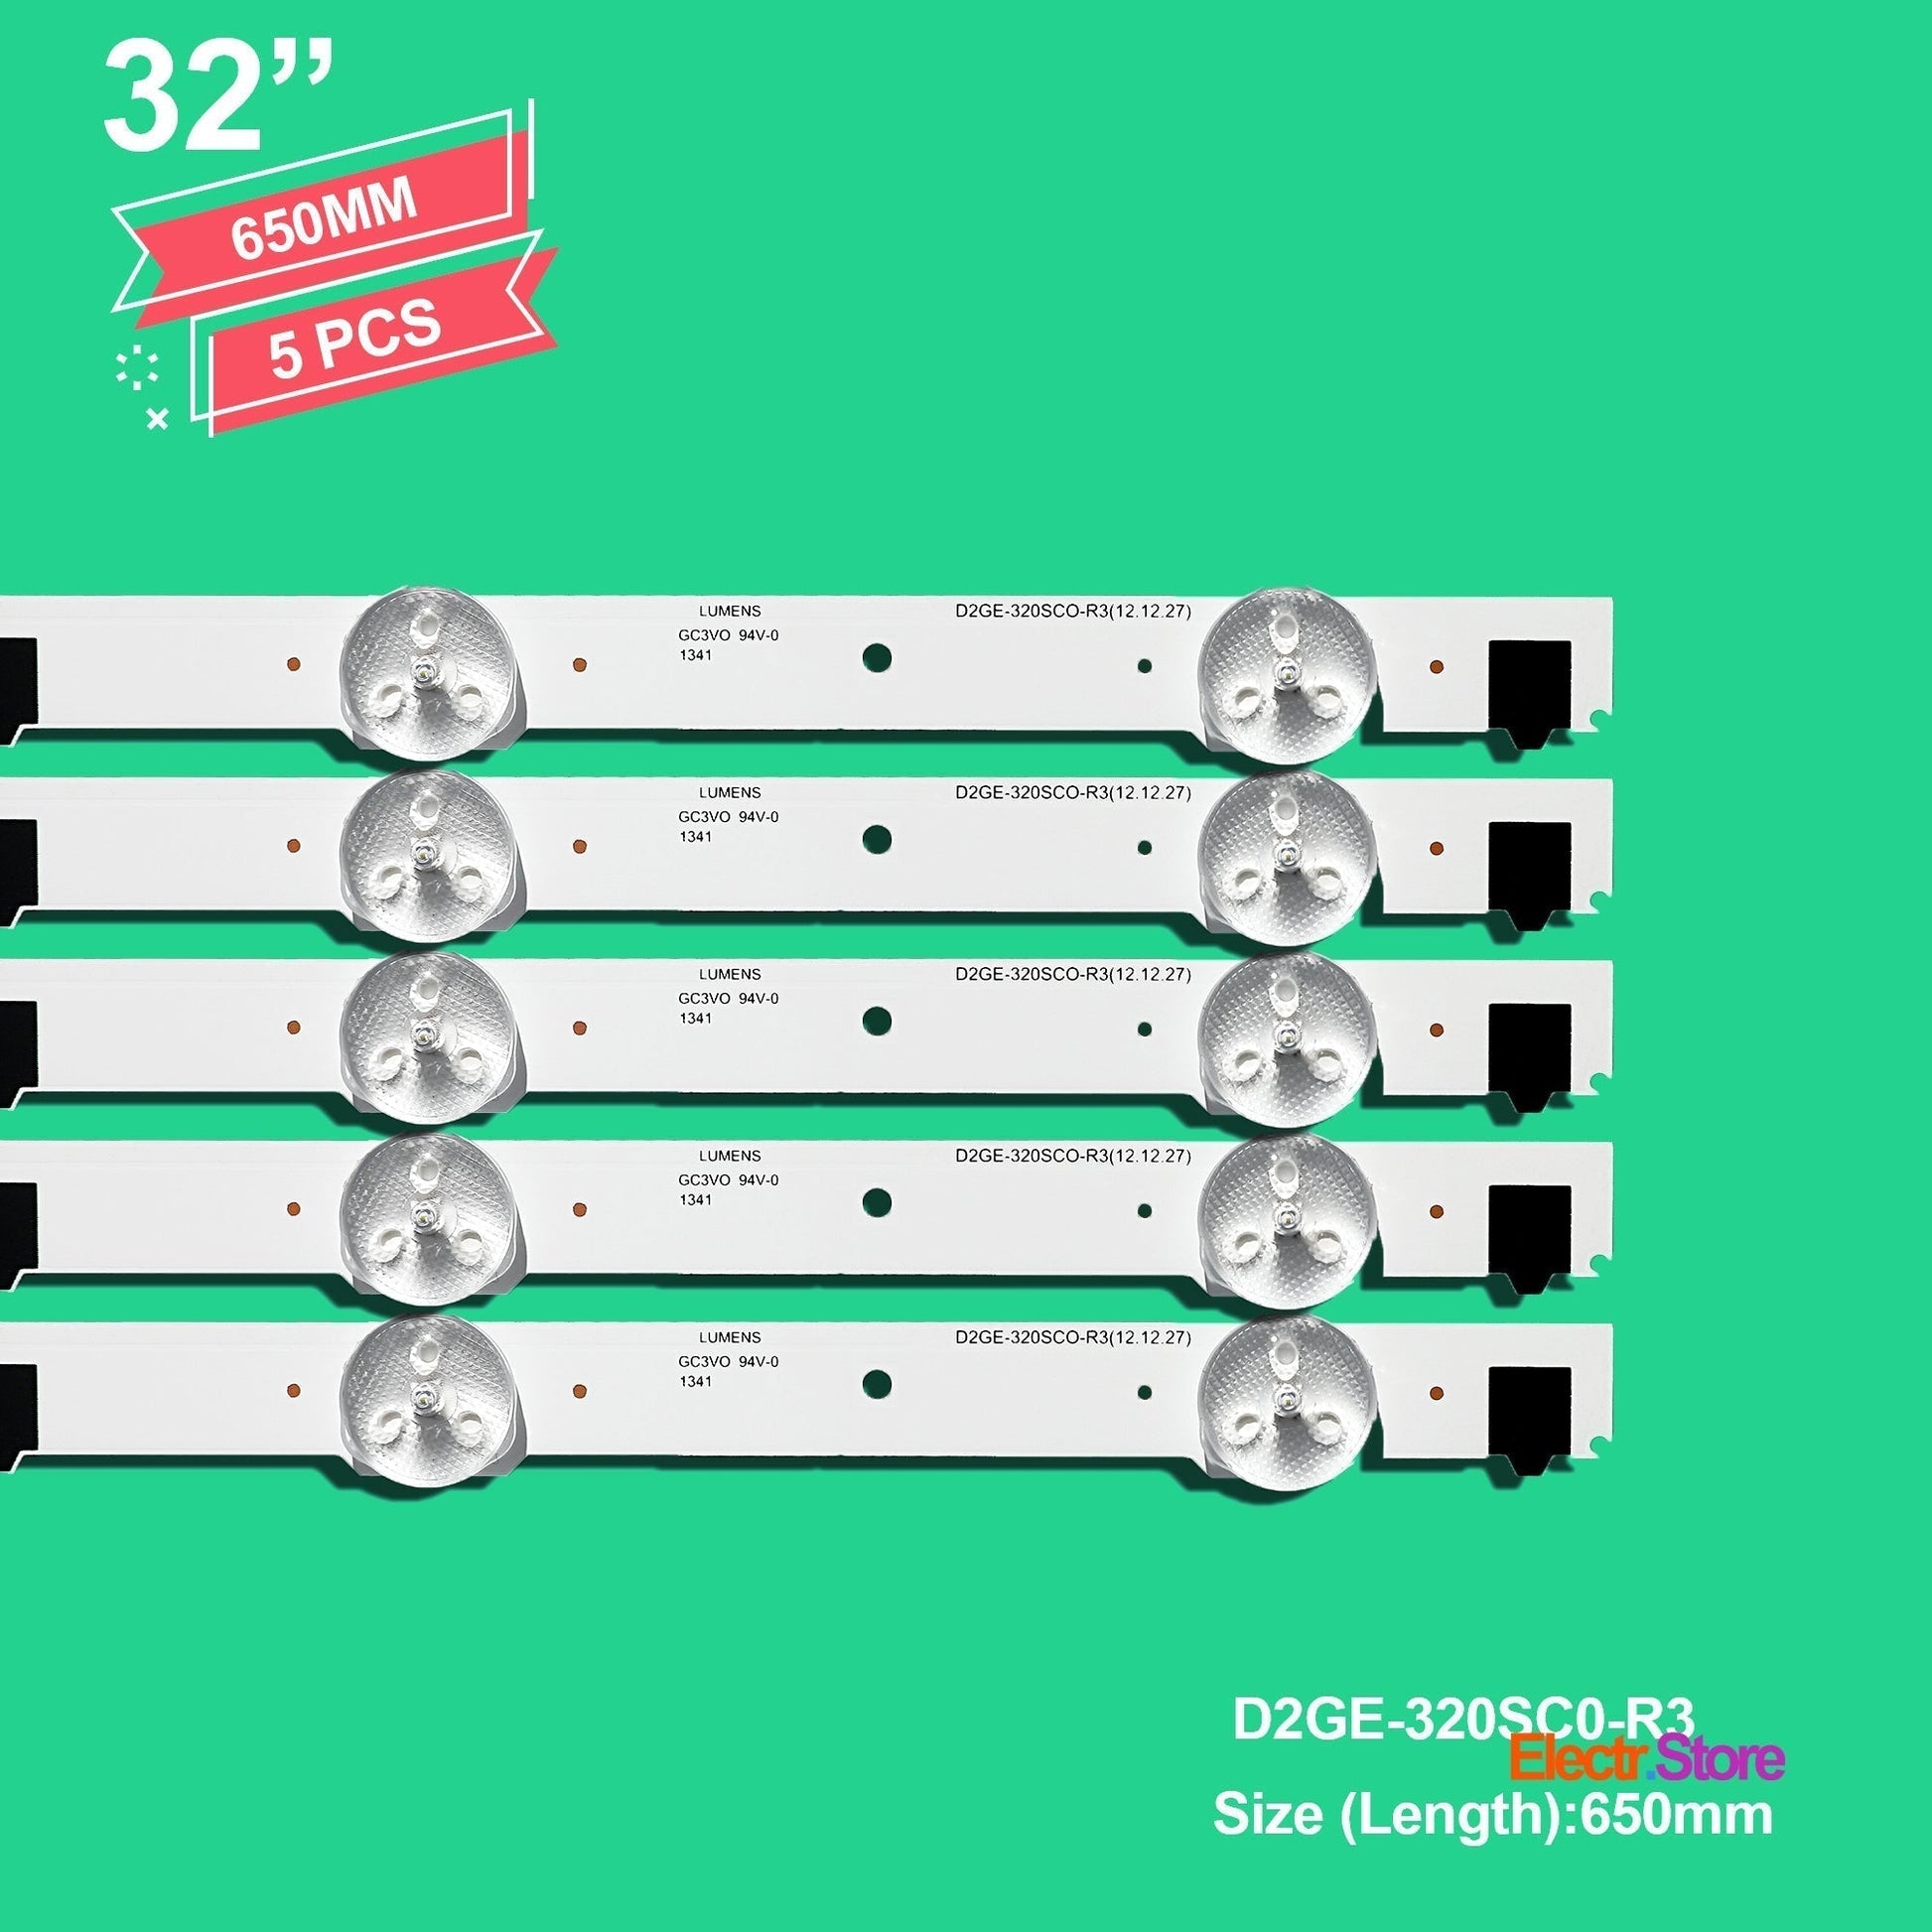 LED Backlight Strip Kits, 2013SVS32F, 2013SVS32H, BN96-28489A, BN96-25300A, BN96-25299A, D2GE-320SC0-R3 (5 pcs/kit), for TV 32" SAMSUNG: UE32F5500, UE32F5570, UE32F5000, UE32F4000 32" D2GE-320SC0-R3 LED Backlights Samsung Electr.Store